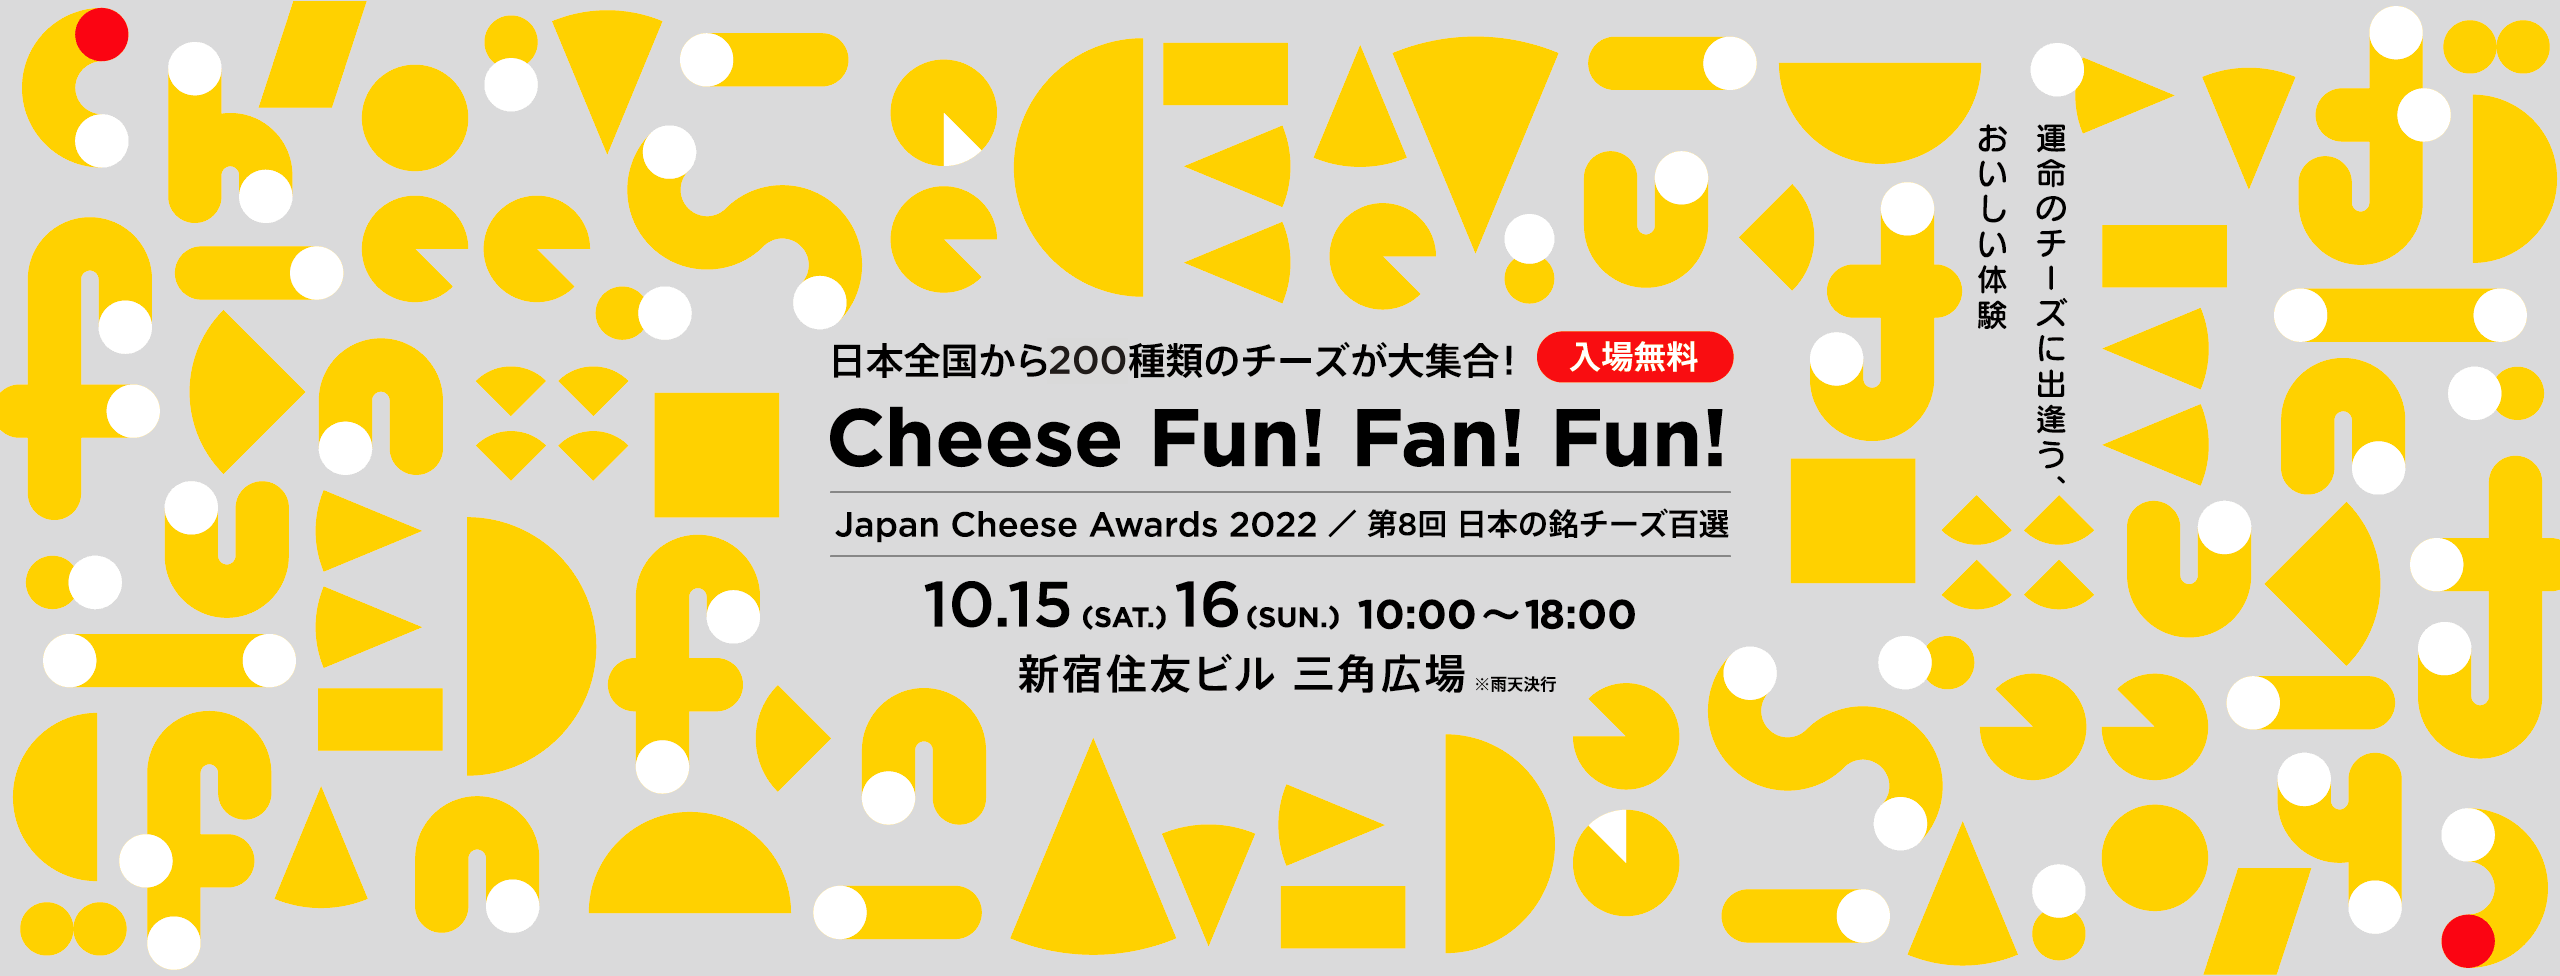 Japan Cheese Awards 2022